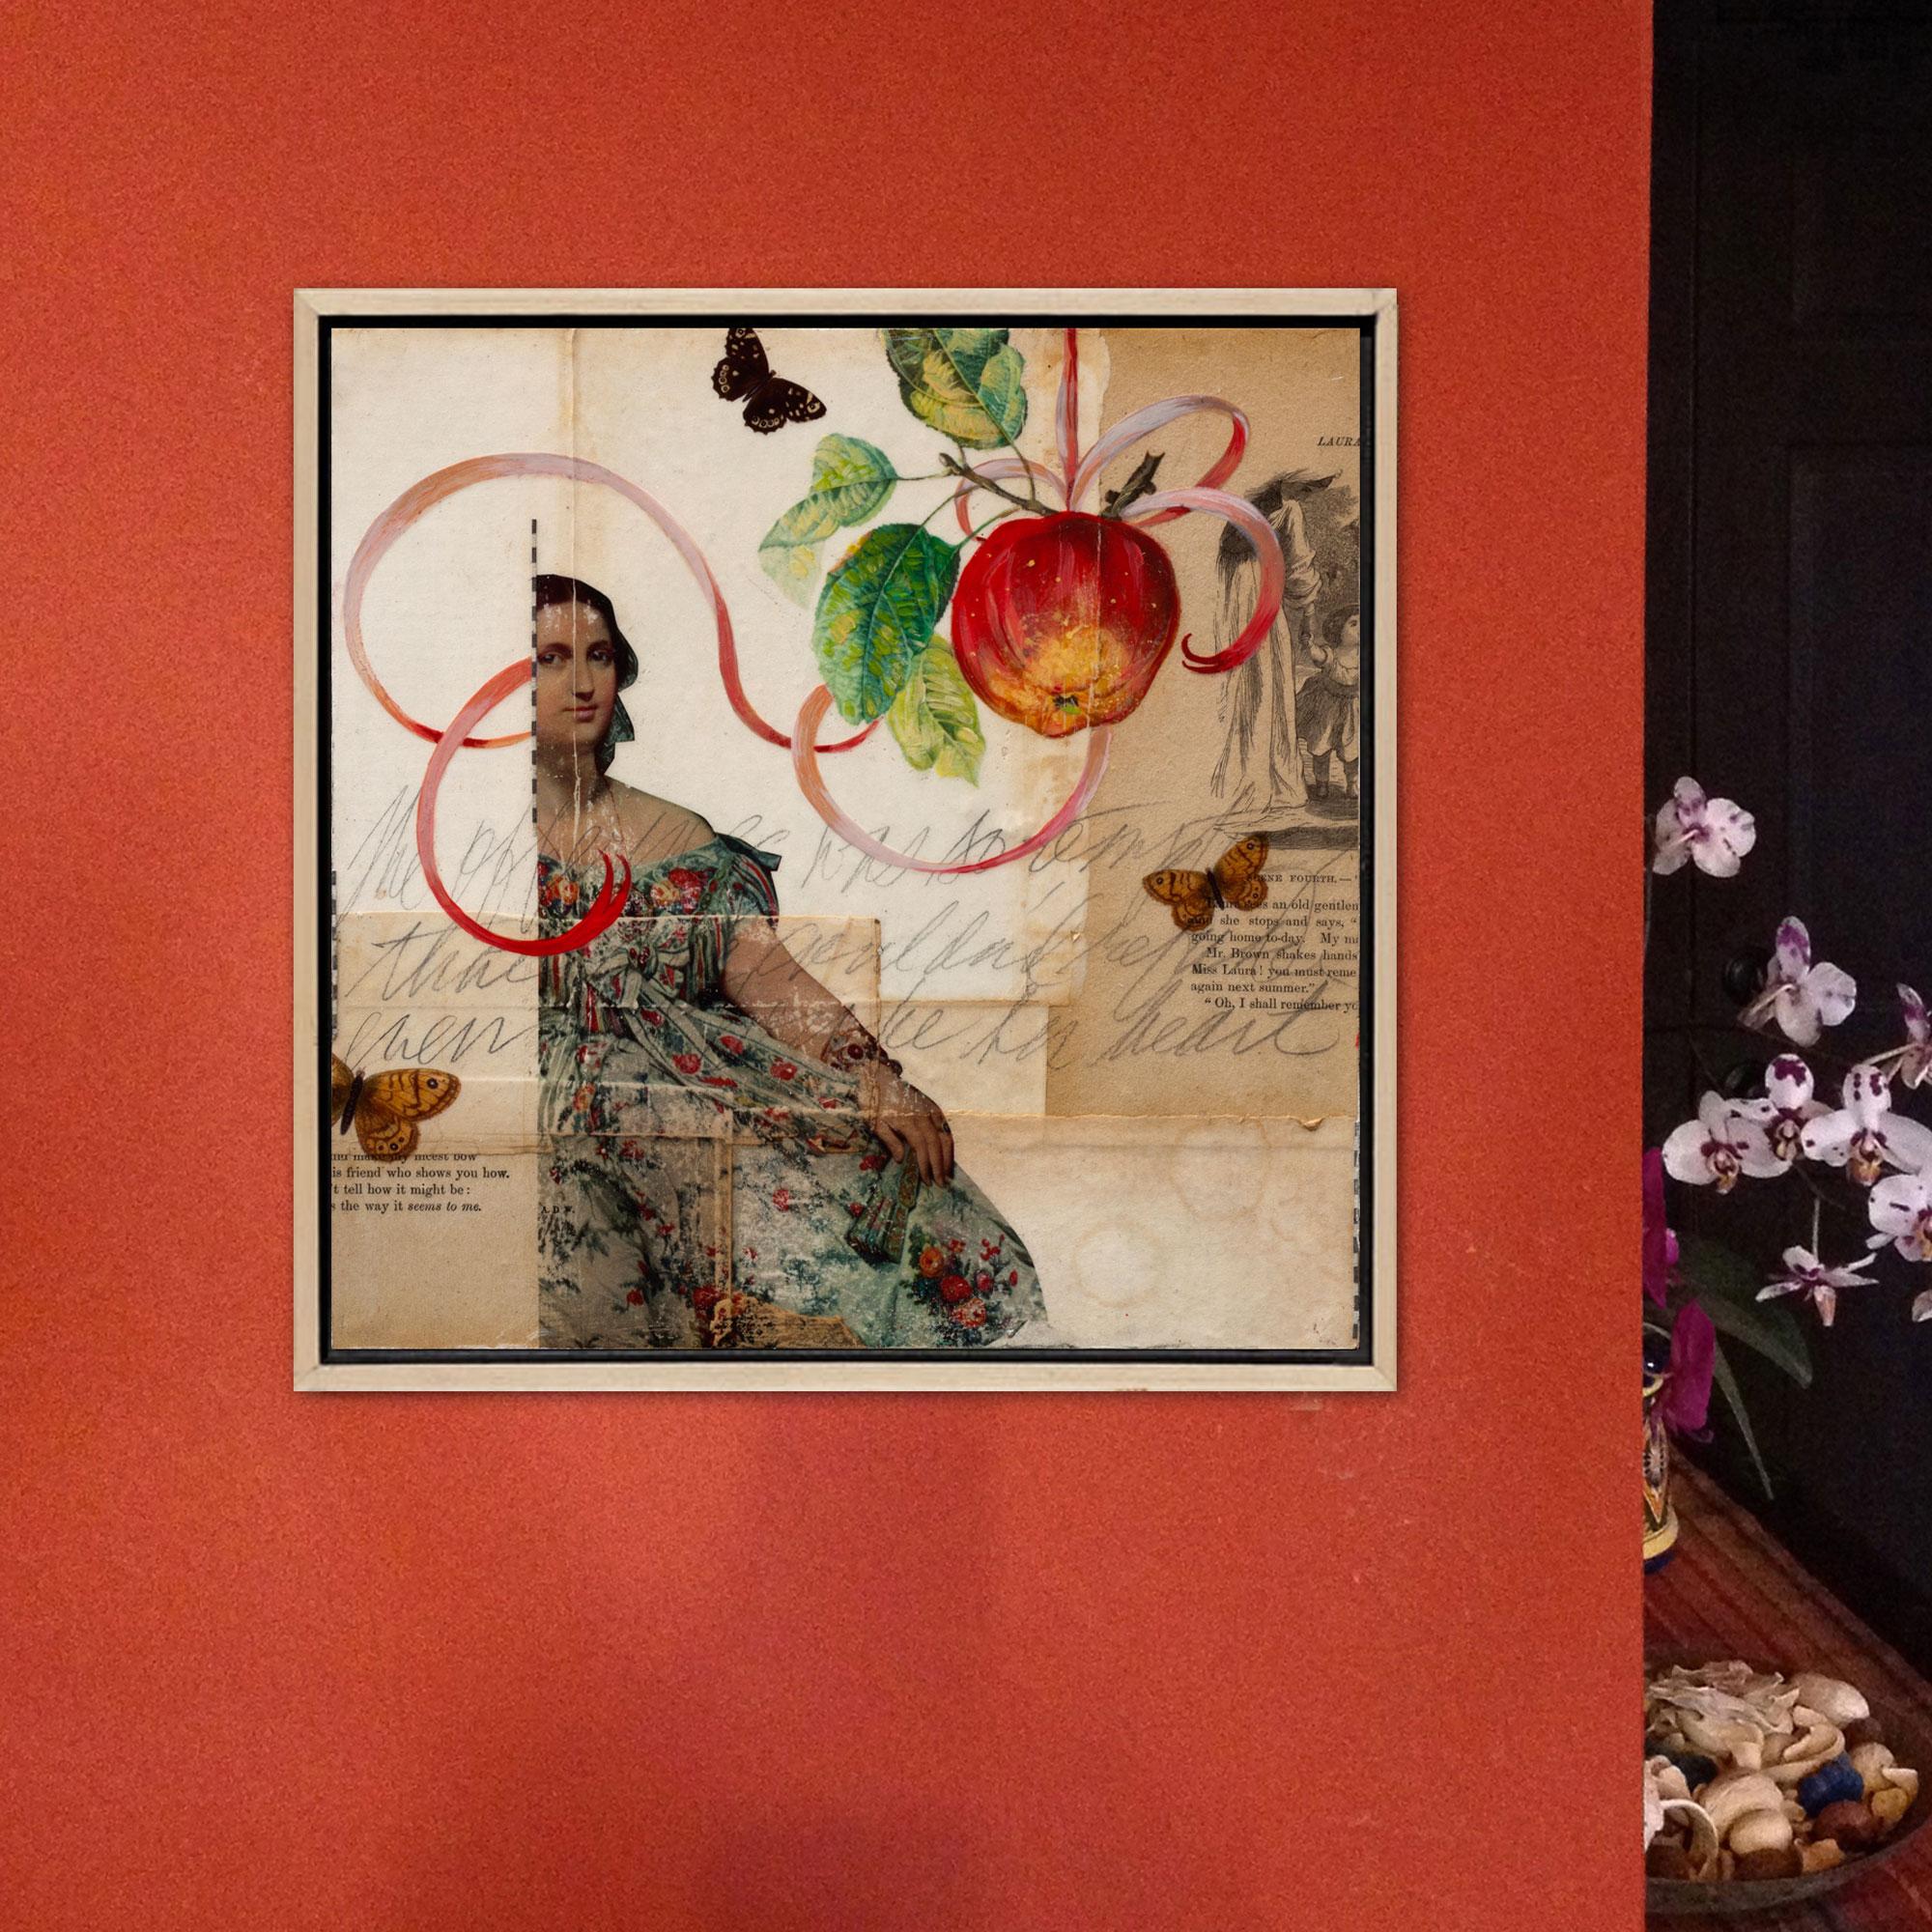 <p>Kommentare der Künstlerin<br>Die Künstlerin Darlene McElroy zeigt eine zeitgenössische Collage aus alten Ephemera. Sie setzt das Bild einer Dame mit Schmetterlingen auf und malt einen saftigen Apfel, der an einem Band hängt. 